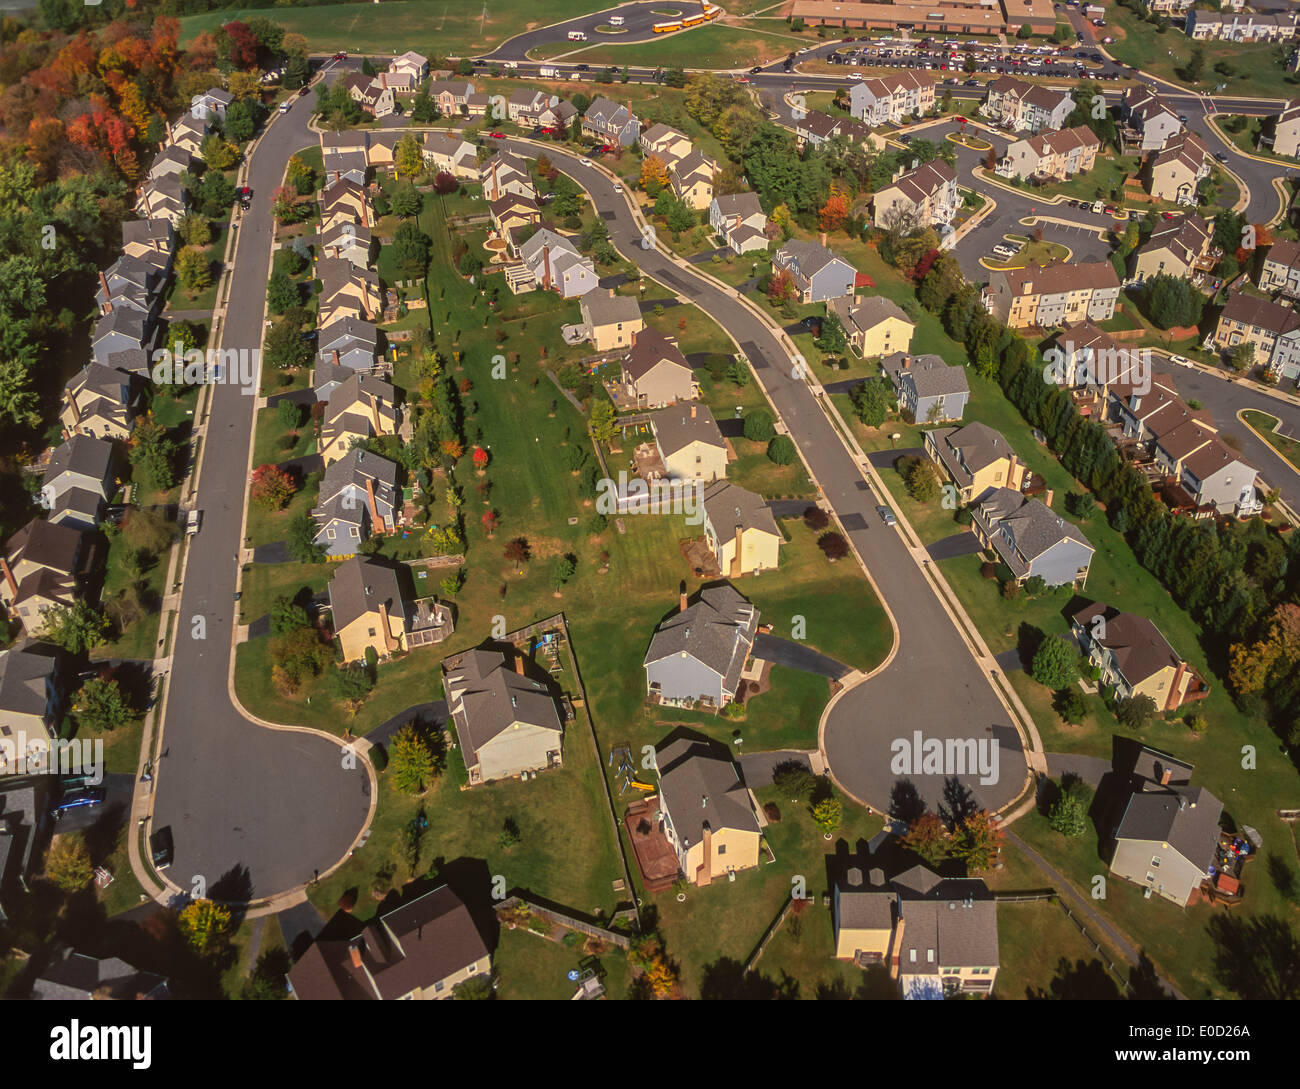 LOUDOUN COUNTY, VIRGINIA, USA - Aerial of suburban housing development with cul de sac streets. Stock Photo